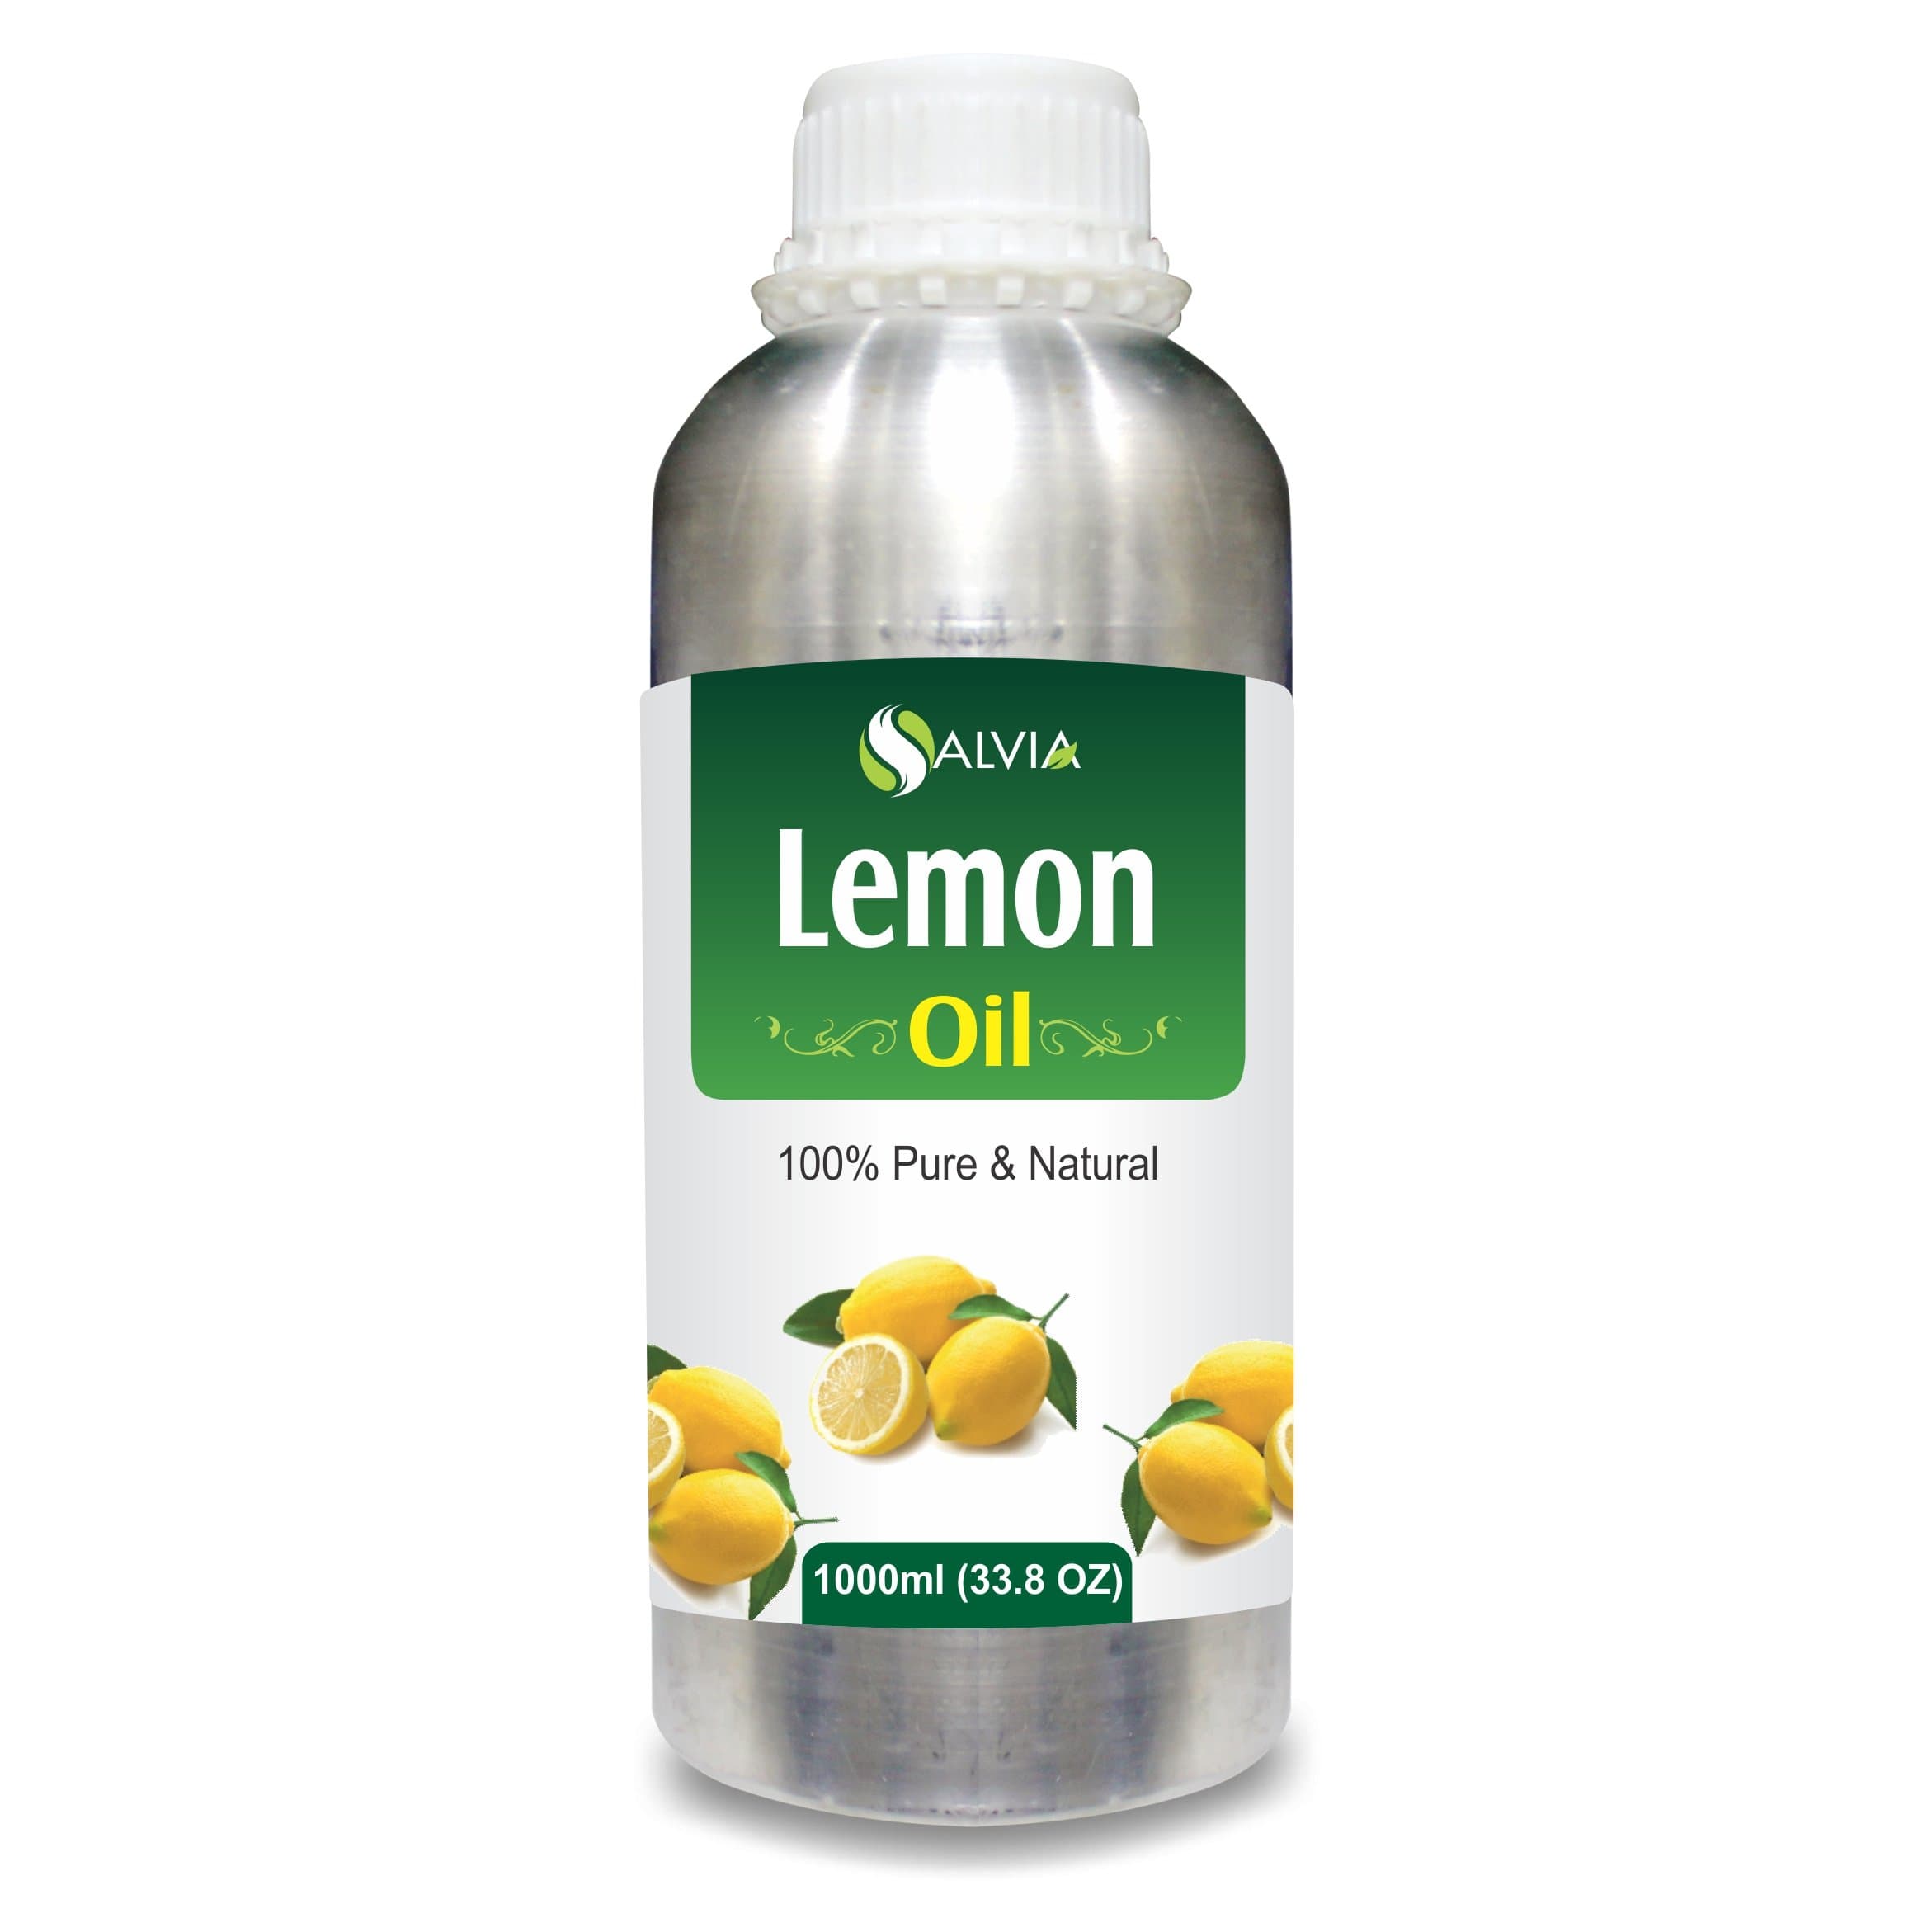 lemon oil for skin care